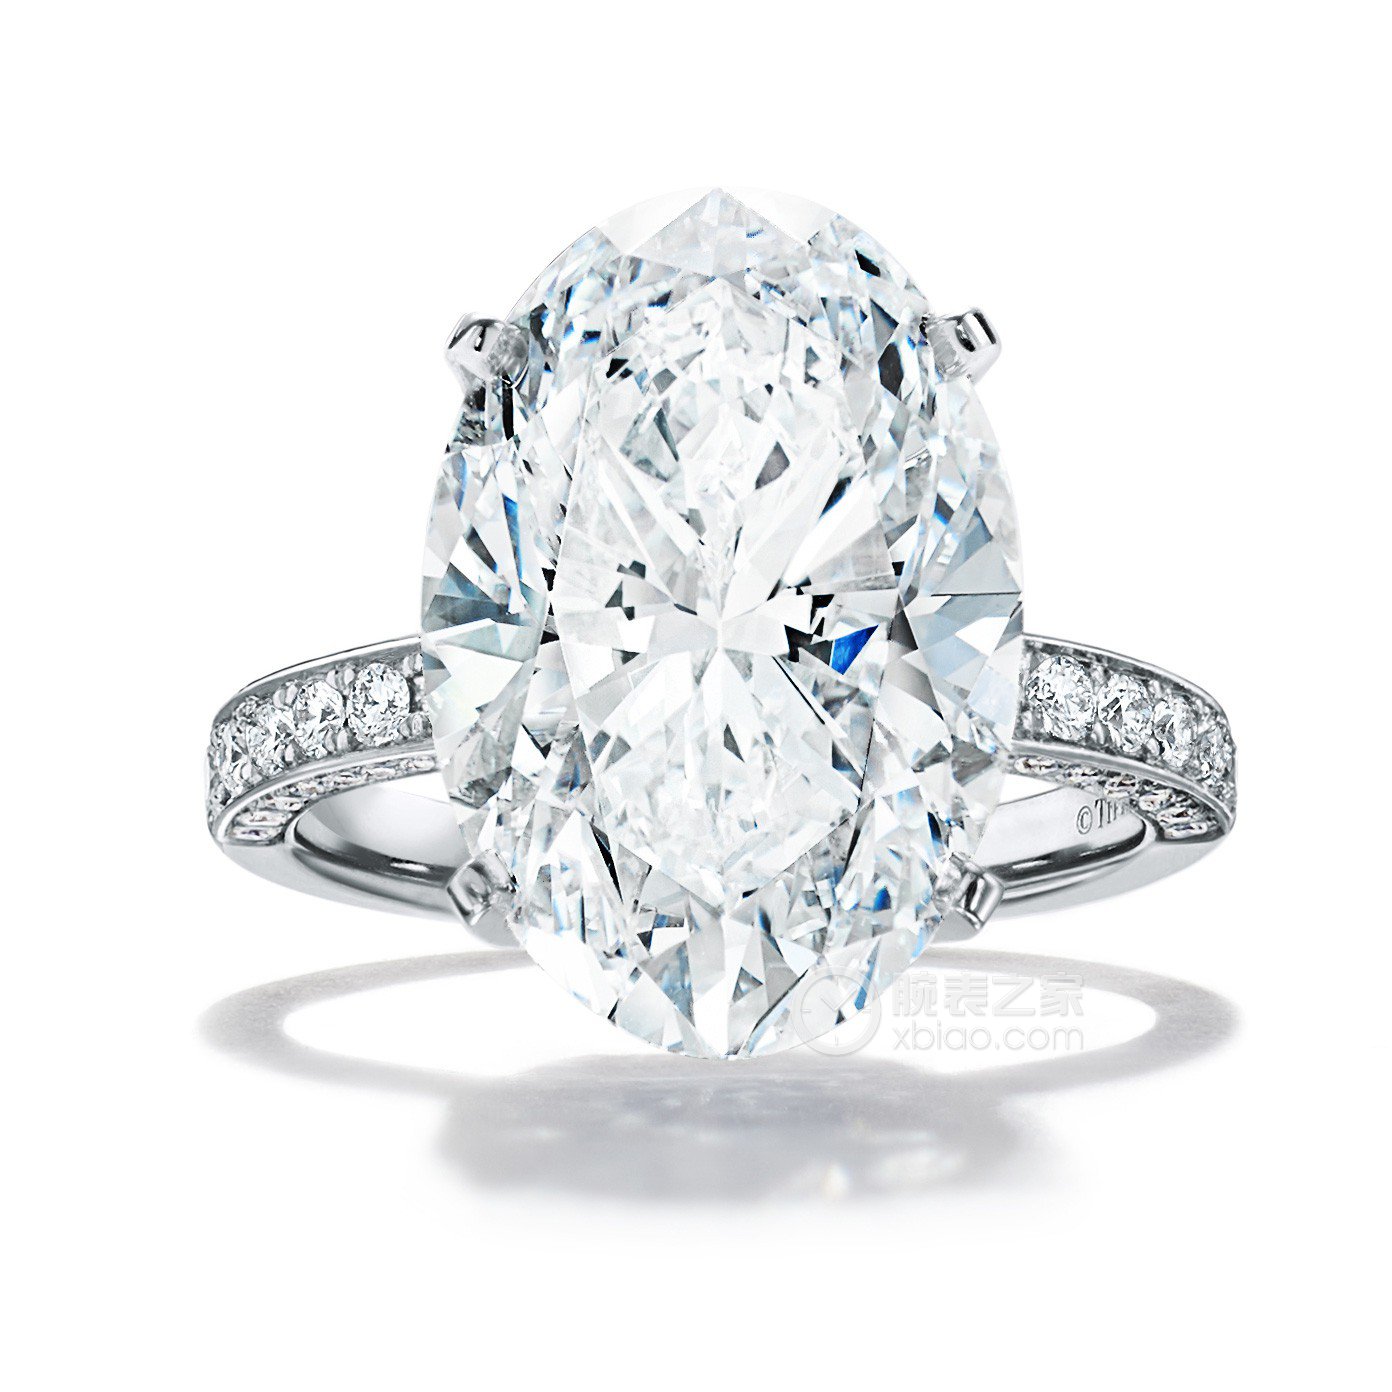 高清图|蒂芙尼订婚戒指Tiffany® Setting钻戒戒指图片1|腕表之家-珠宝